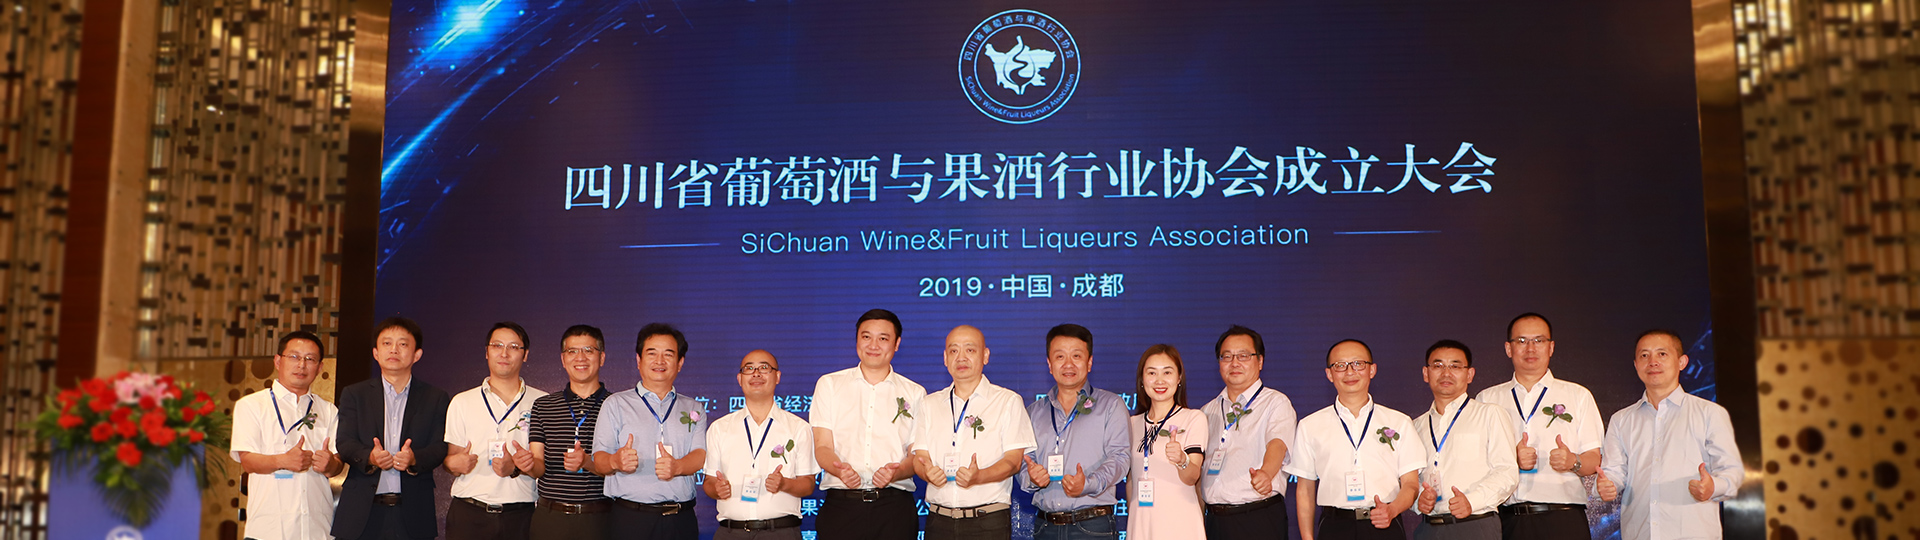 四川省葡萄酒与果酒行业协会成立大会